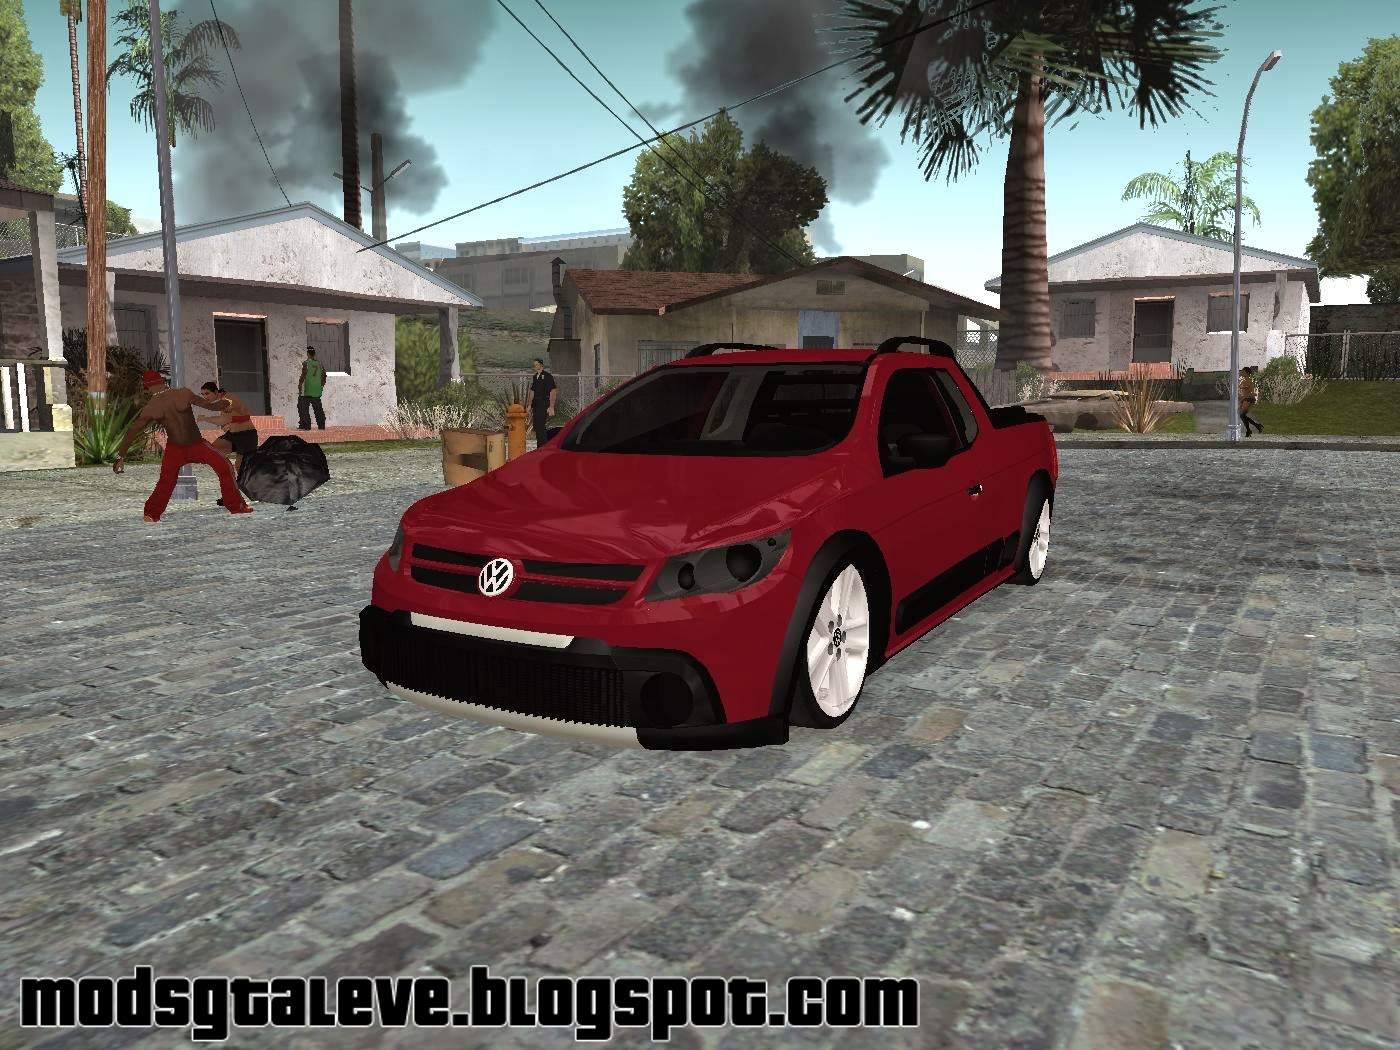 Templates - Cars - Volkswagen - Volkswagen Saveiro Cross